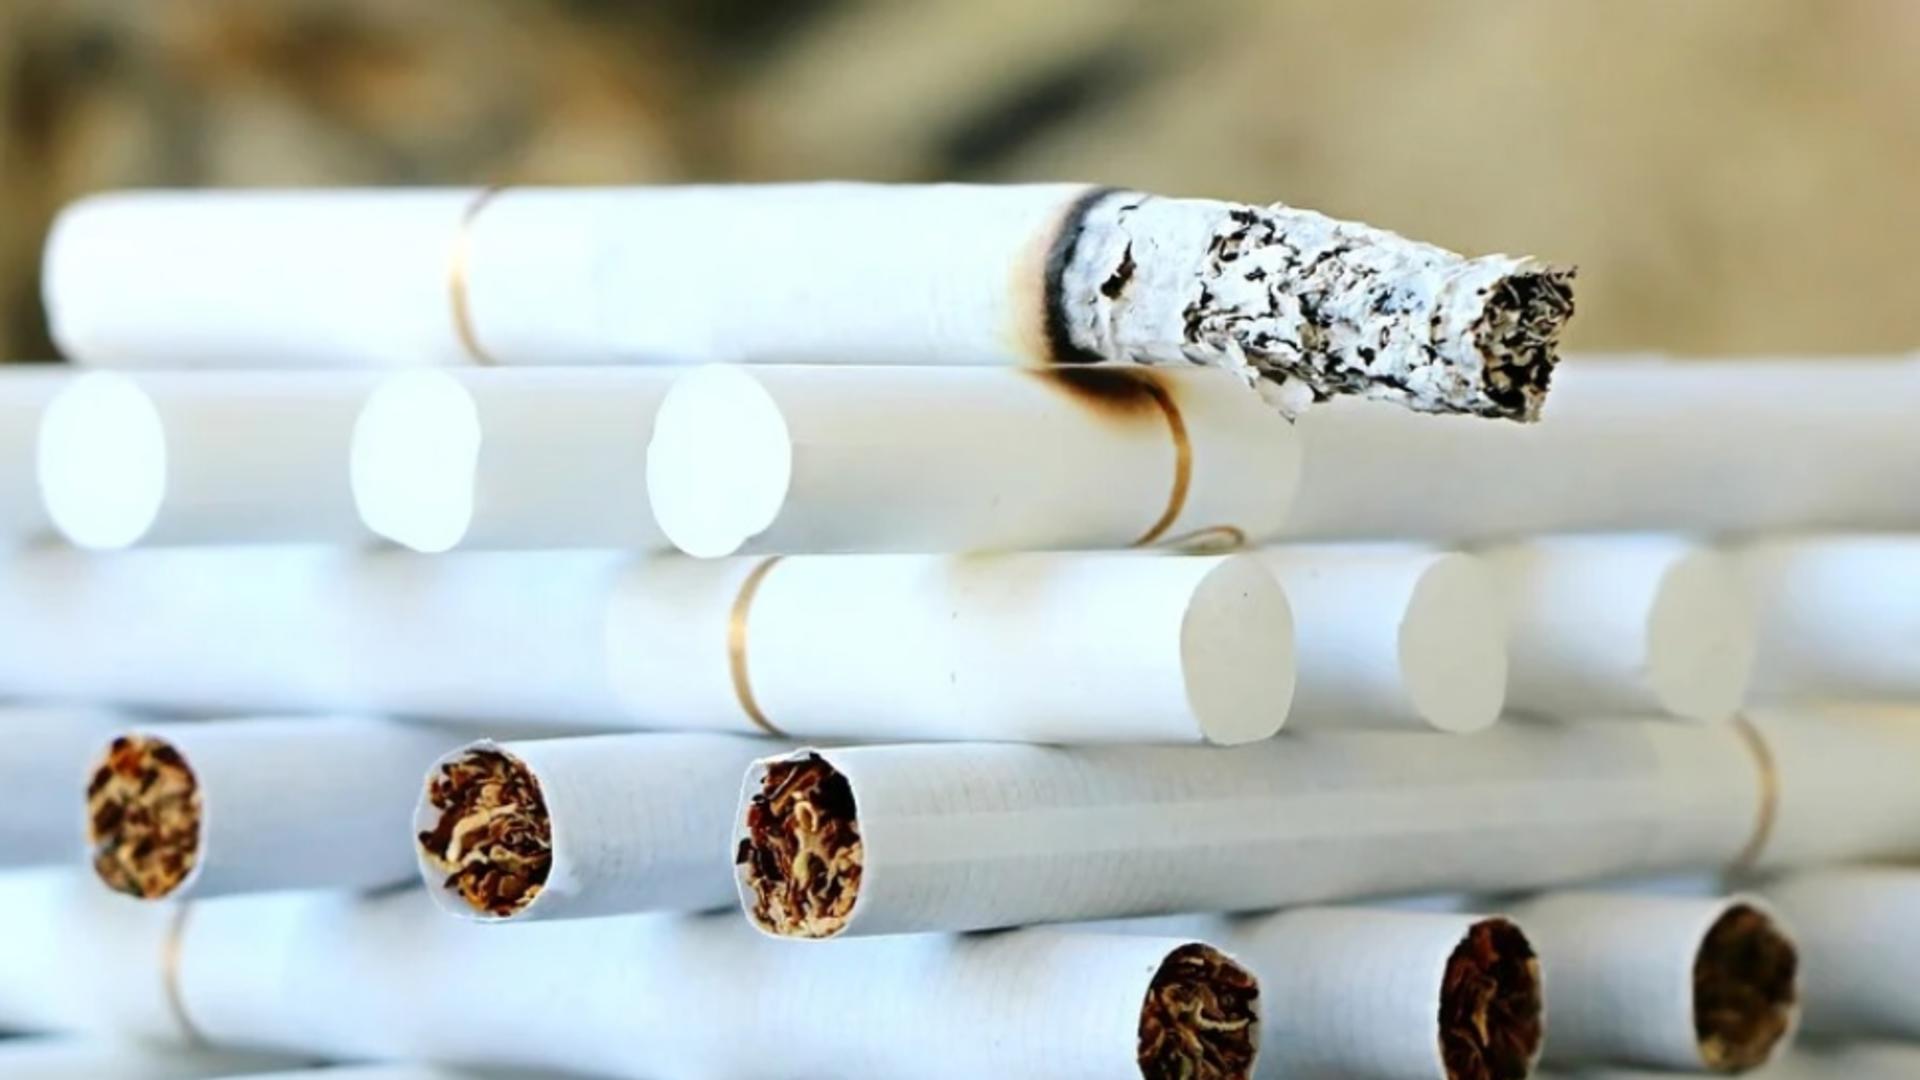 Peste 20 de percheziții la persoane bănuite de contrabandă cu țigări. O persoană, arestată preventiv, iar alte două puse sub control judiciar